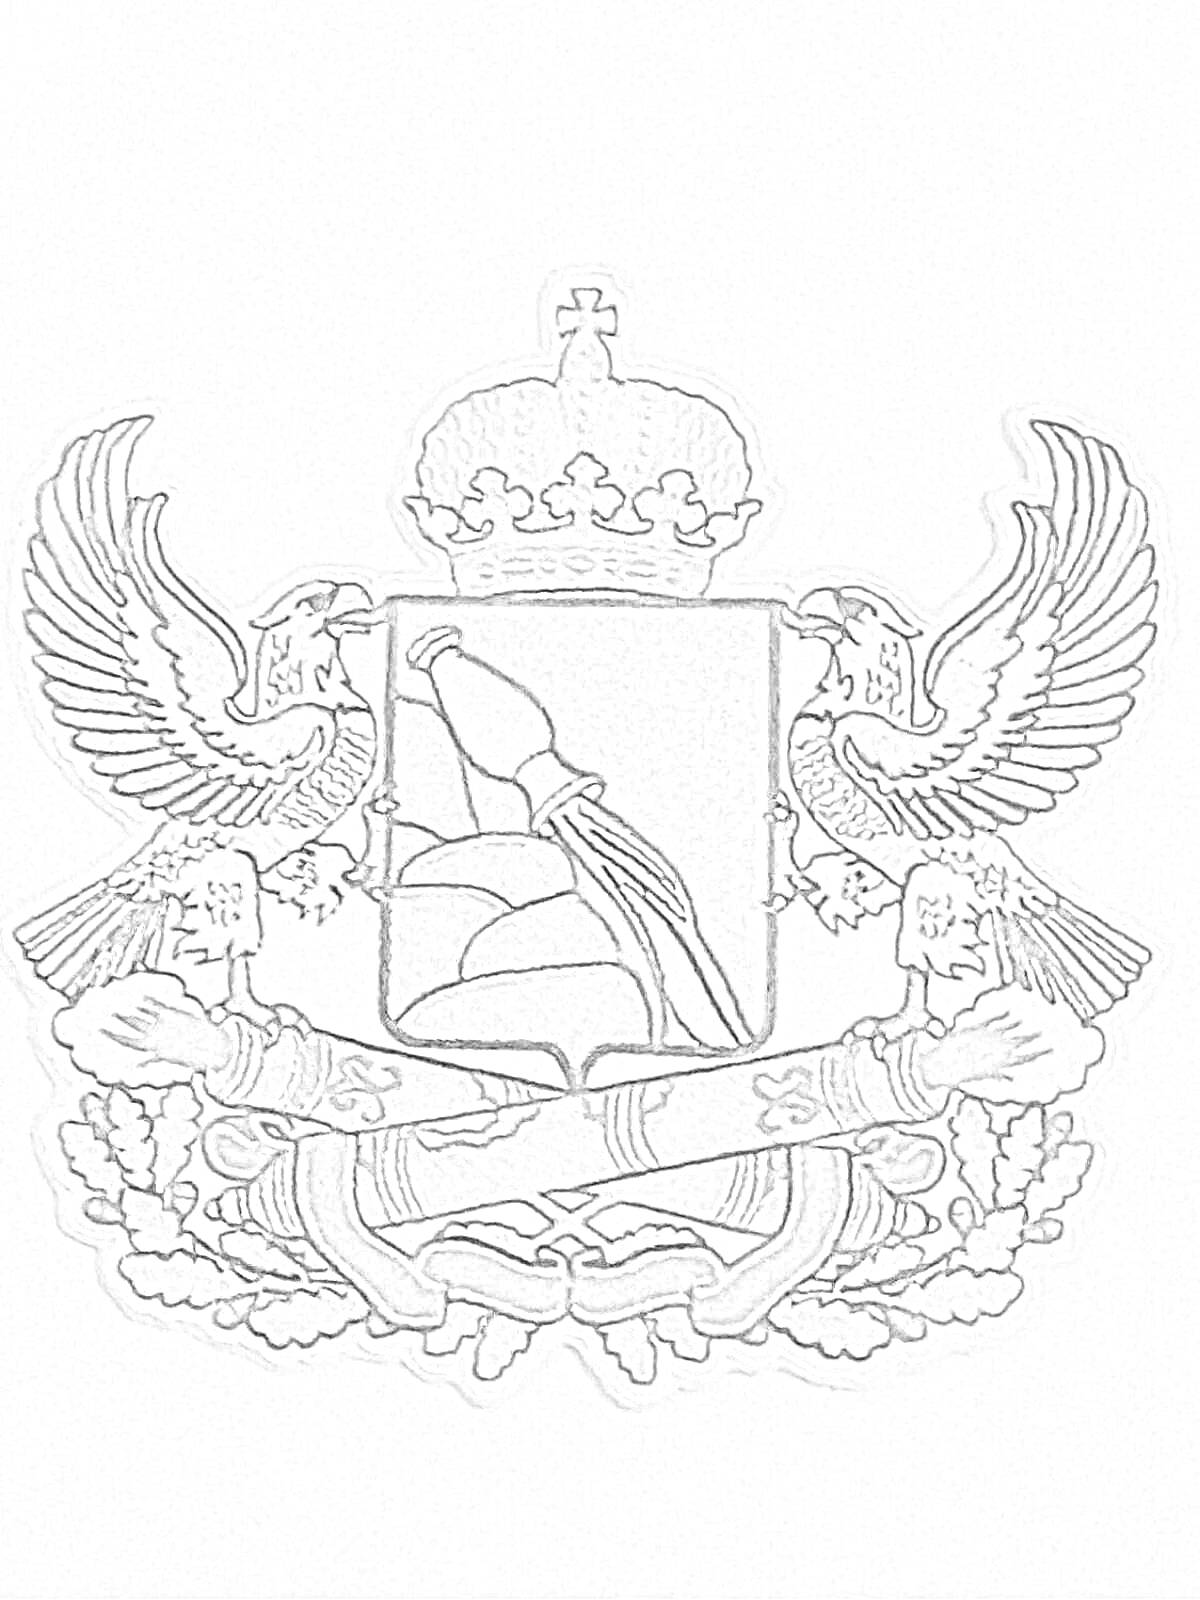 Раскраска Герб Воронежа с короной, щитом, двумя птицами, древком знамени, лентой и дубовыми листьями